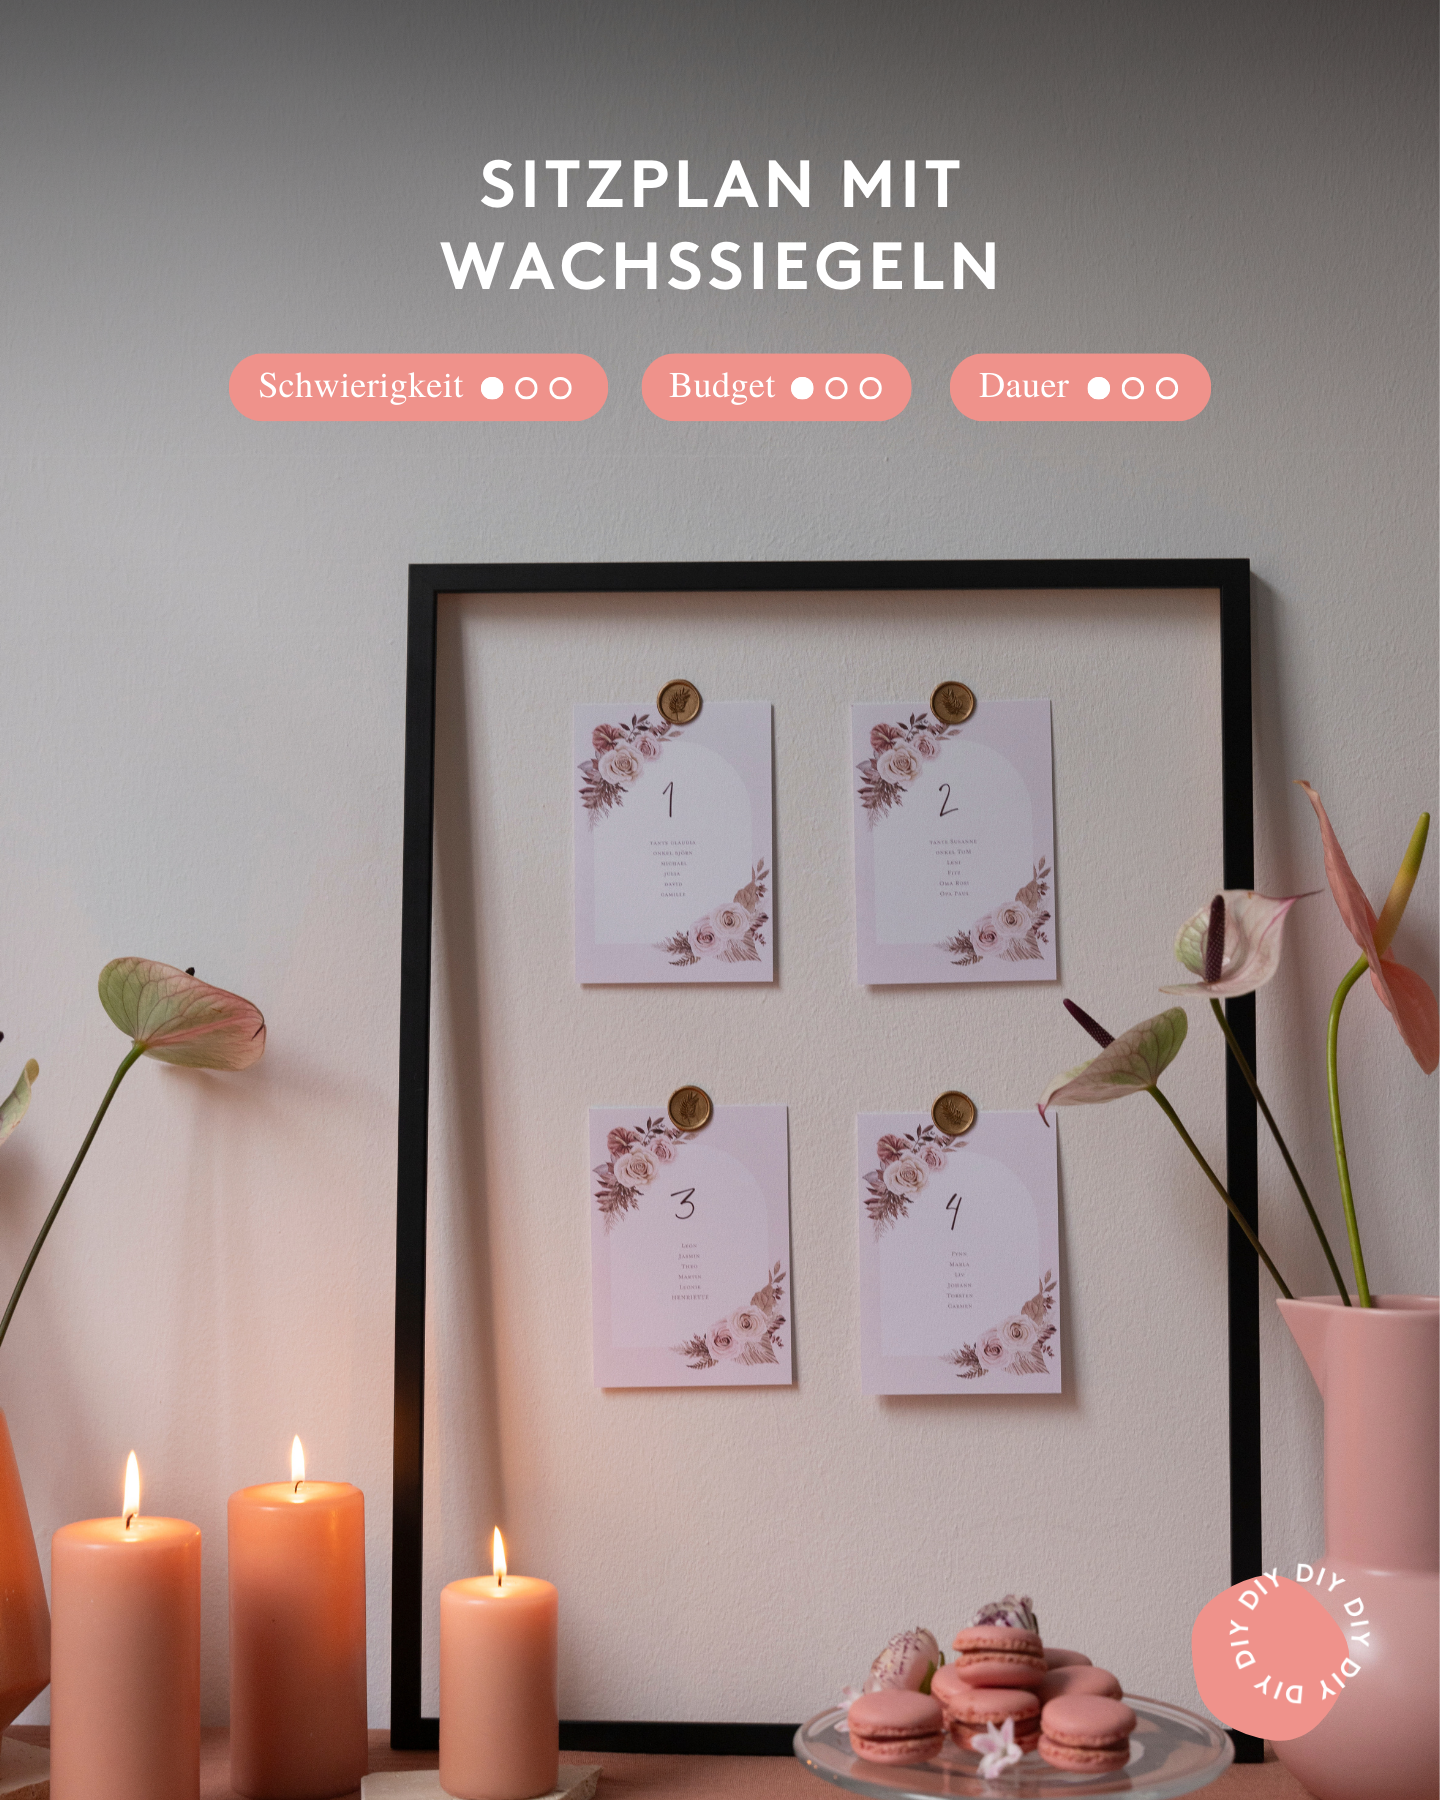 DIY Sitzplan mit Wachssiegel im Bilderrahmen dekorieren.